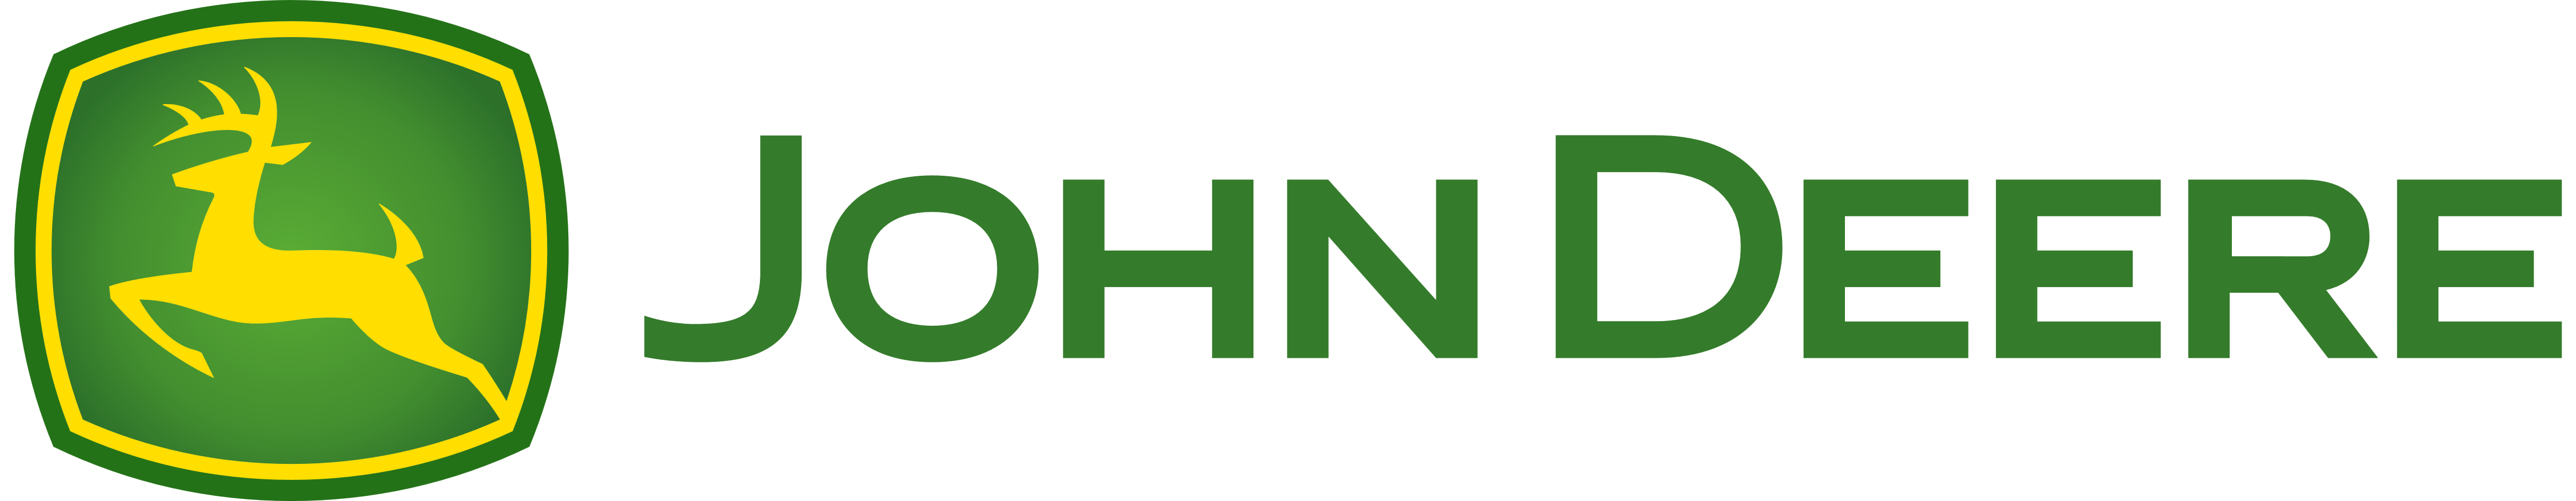 John_Deere_logo_logotype